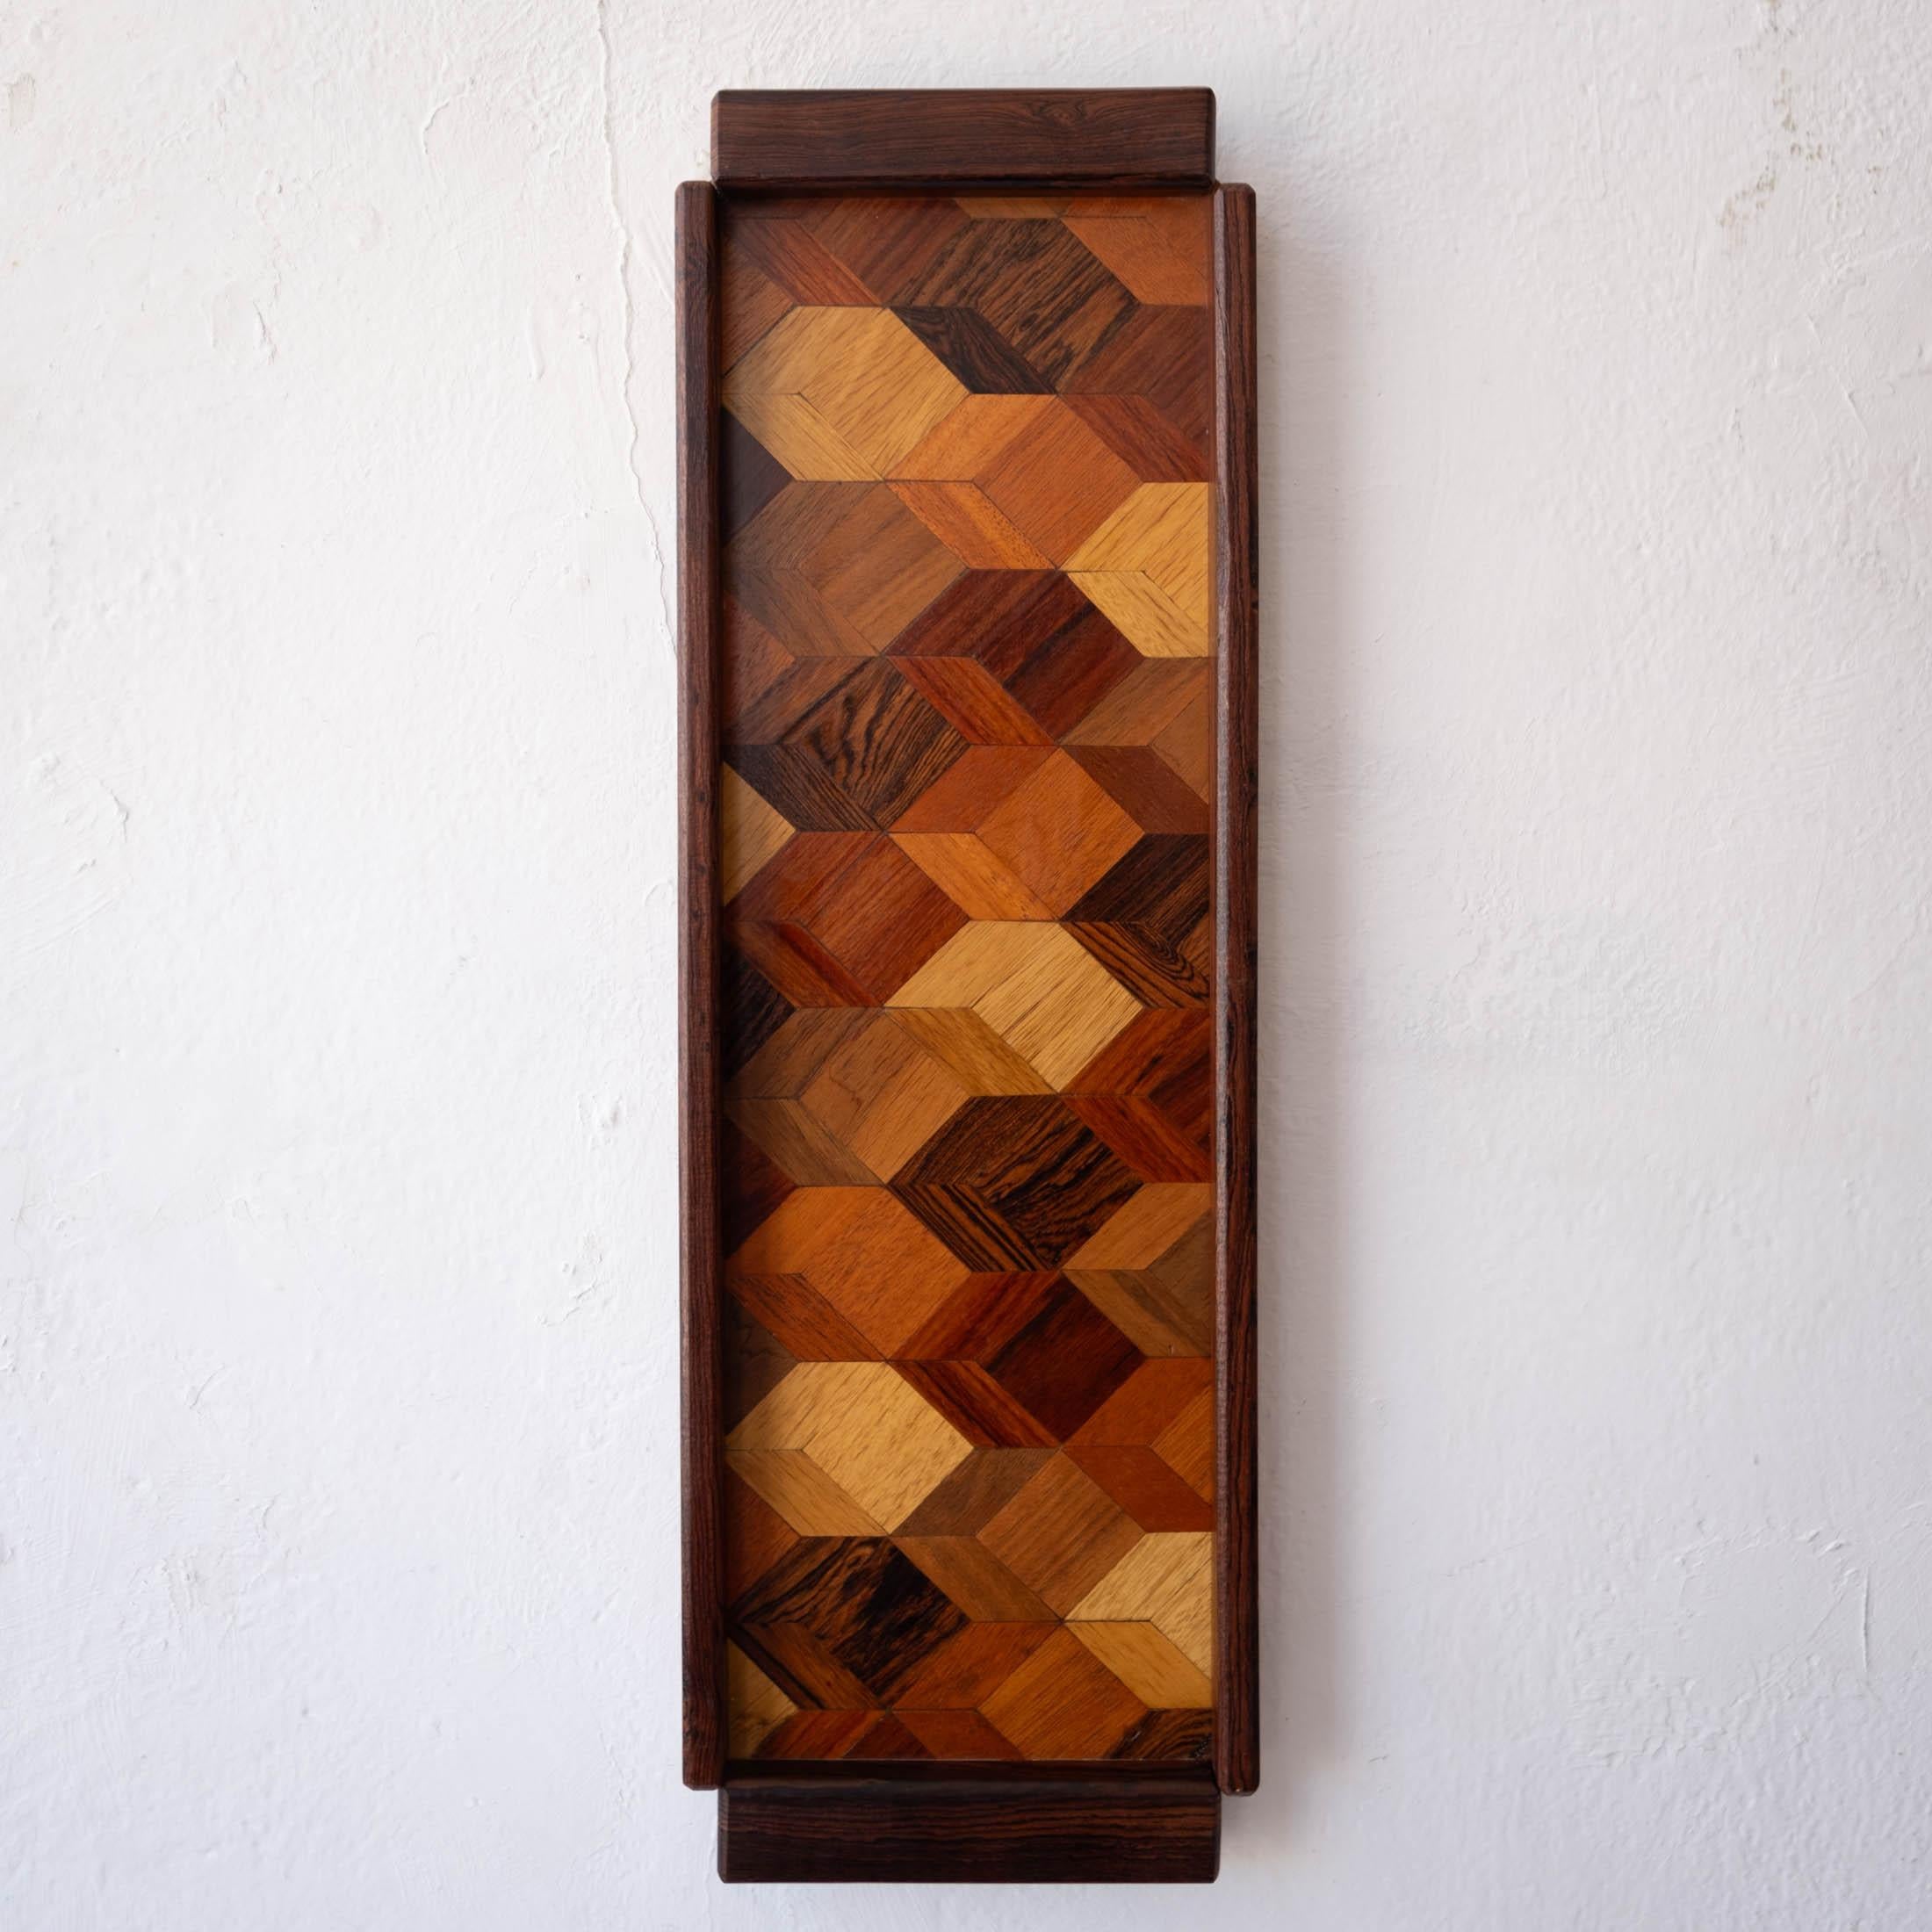 Plateau du moderniste mexicain Don Shoemaker, provenant de son atelier de Señal Mexico. Magnifique marqueterie géométrique de bois exotiques mélangés. Peut être fixé au mur. 

Le designer Don Shoemaker ( est né dans le Nebraska et a étudié à l'Art